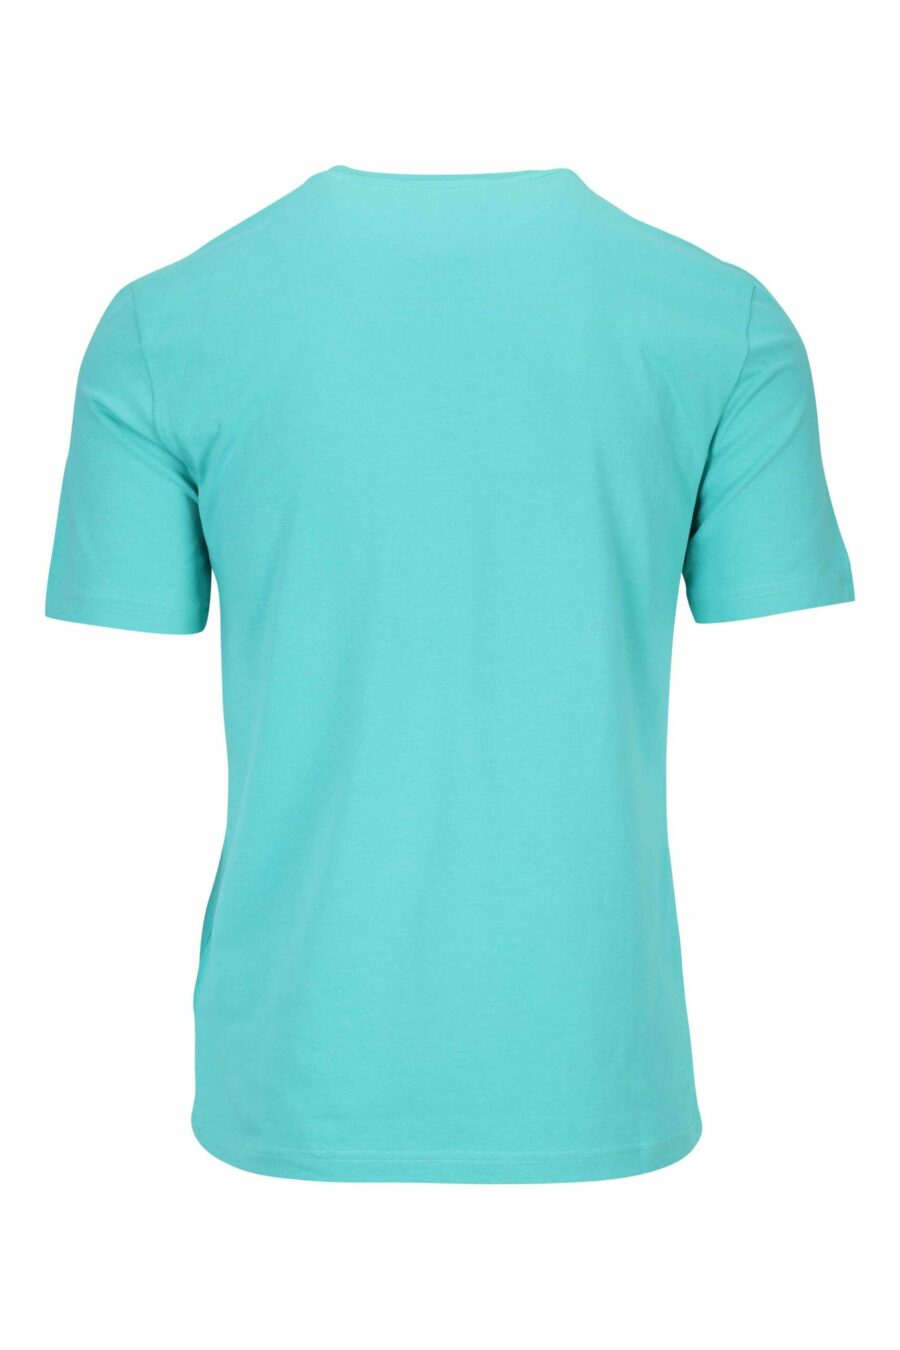 Camiseta verde azulado con maxilogo negro clásico - 667113391748 1 scaled